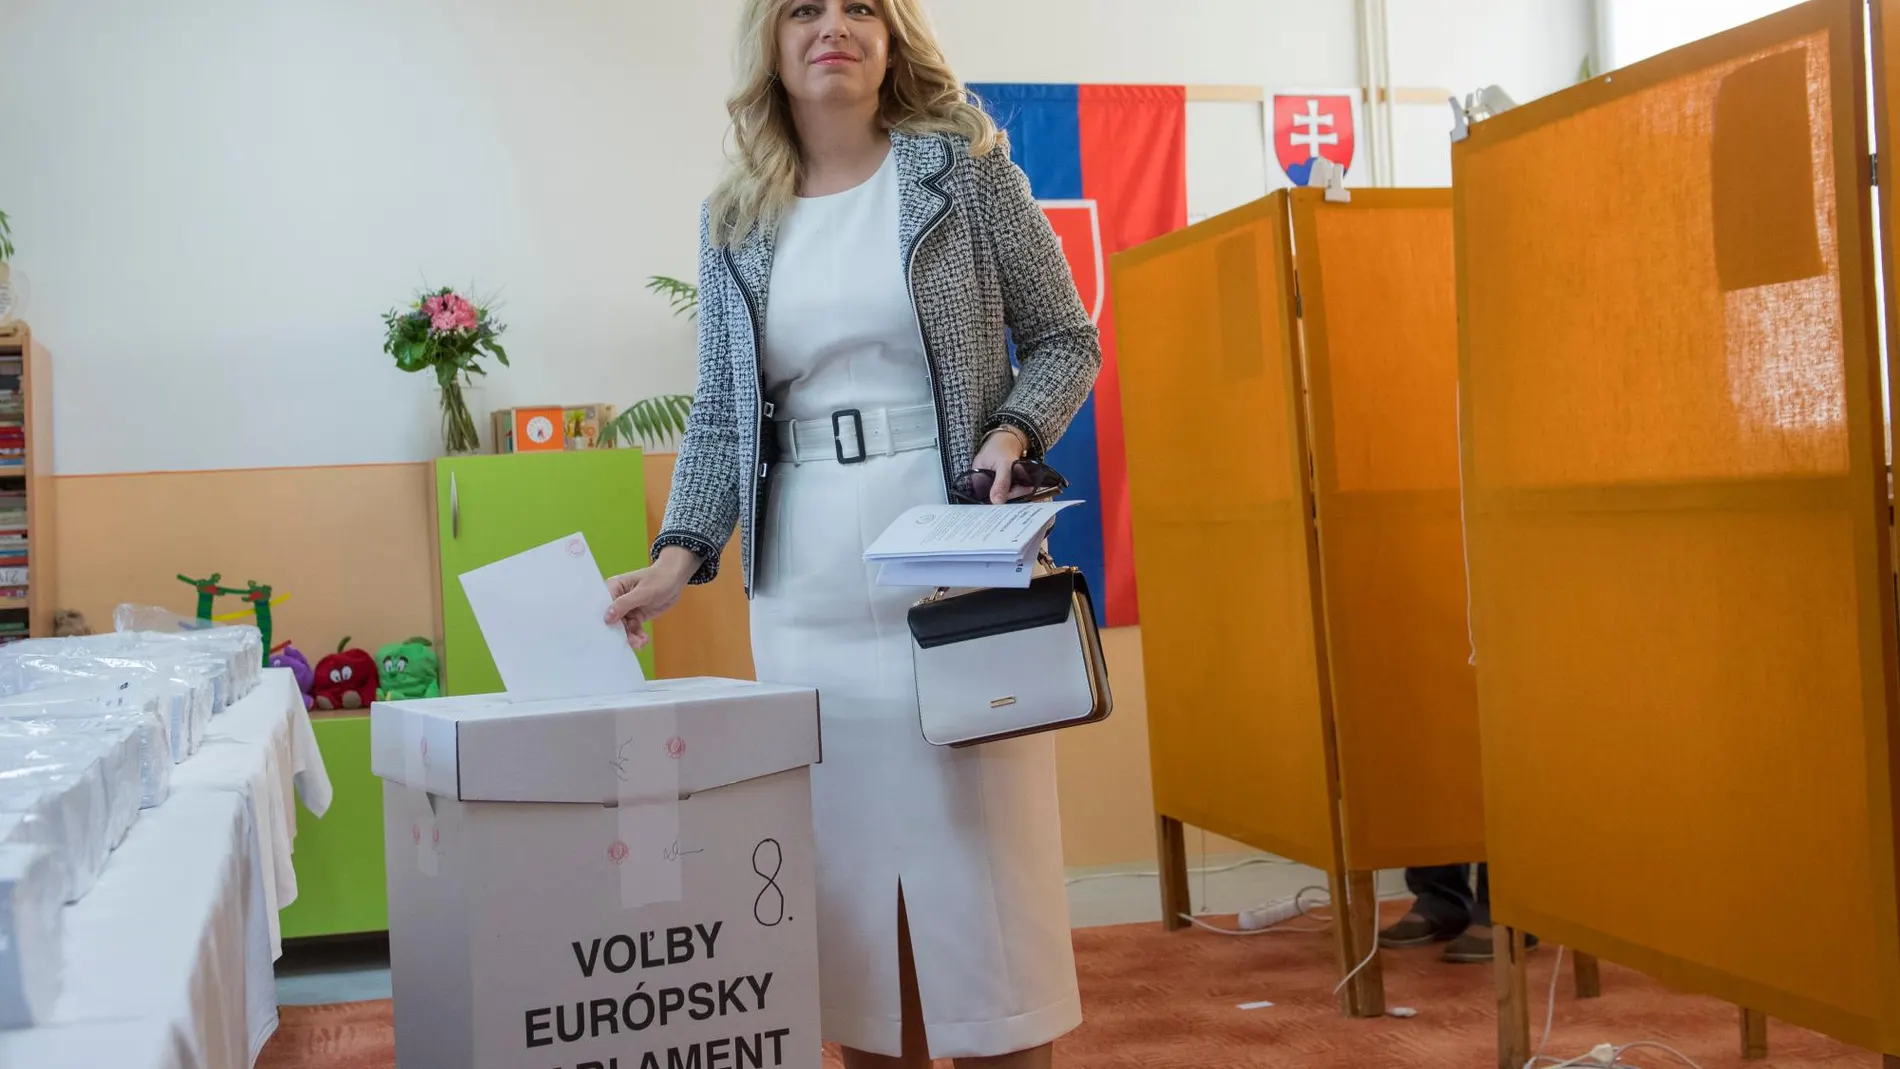 Zuzana Caputova ganó las presidenciales el pasado abril con su nuevo partido PSMichal Svìtok/TASR/dpa